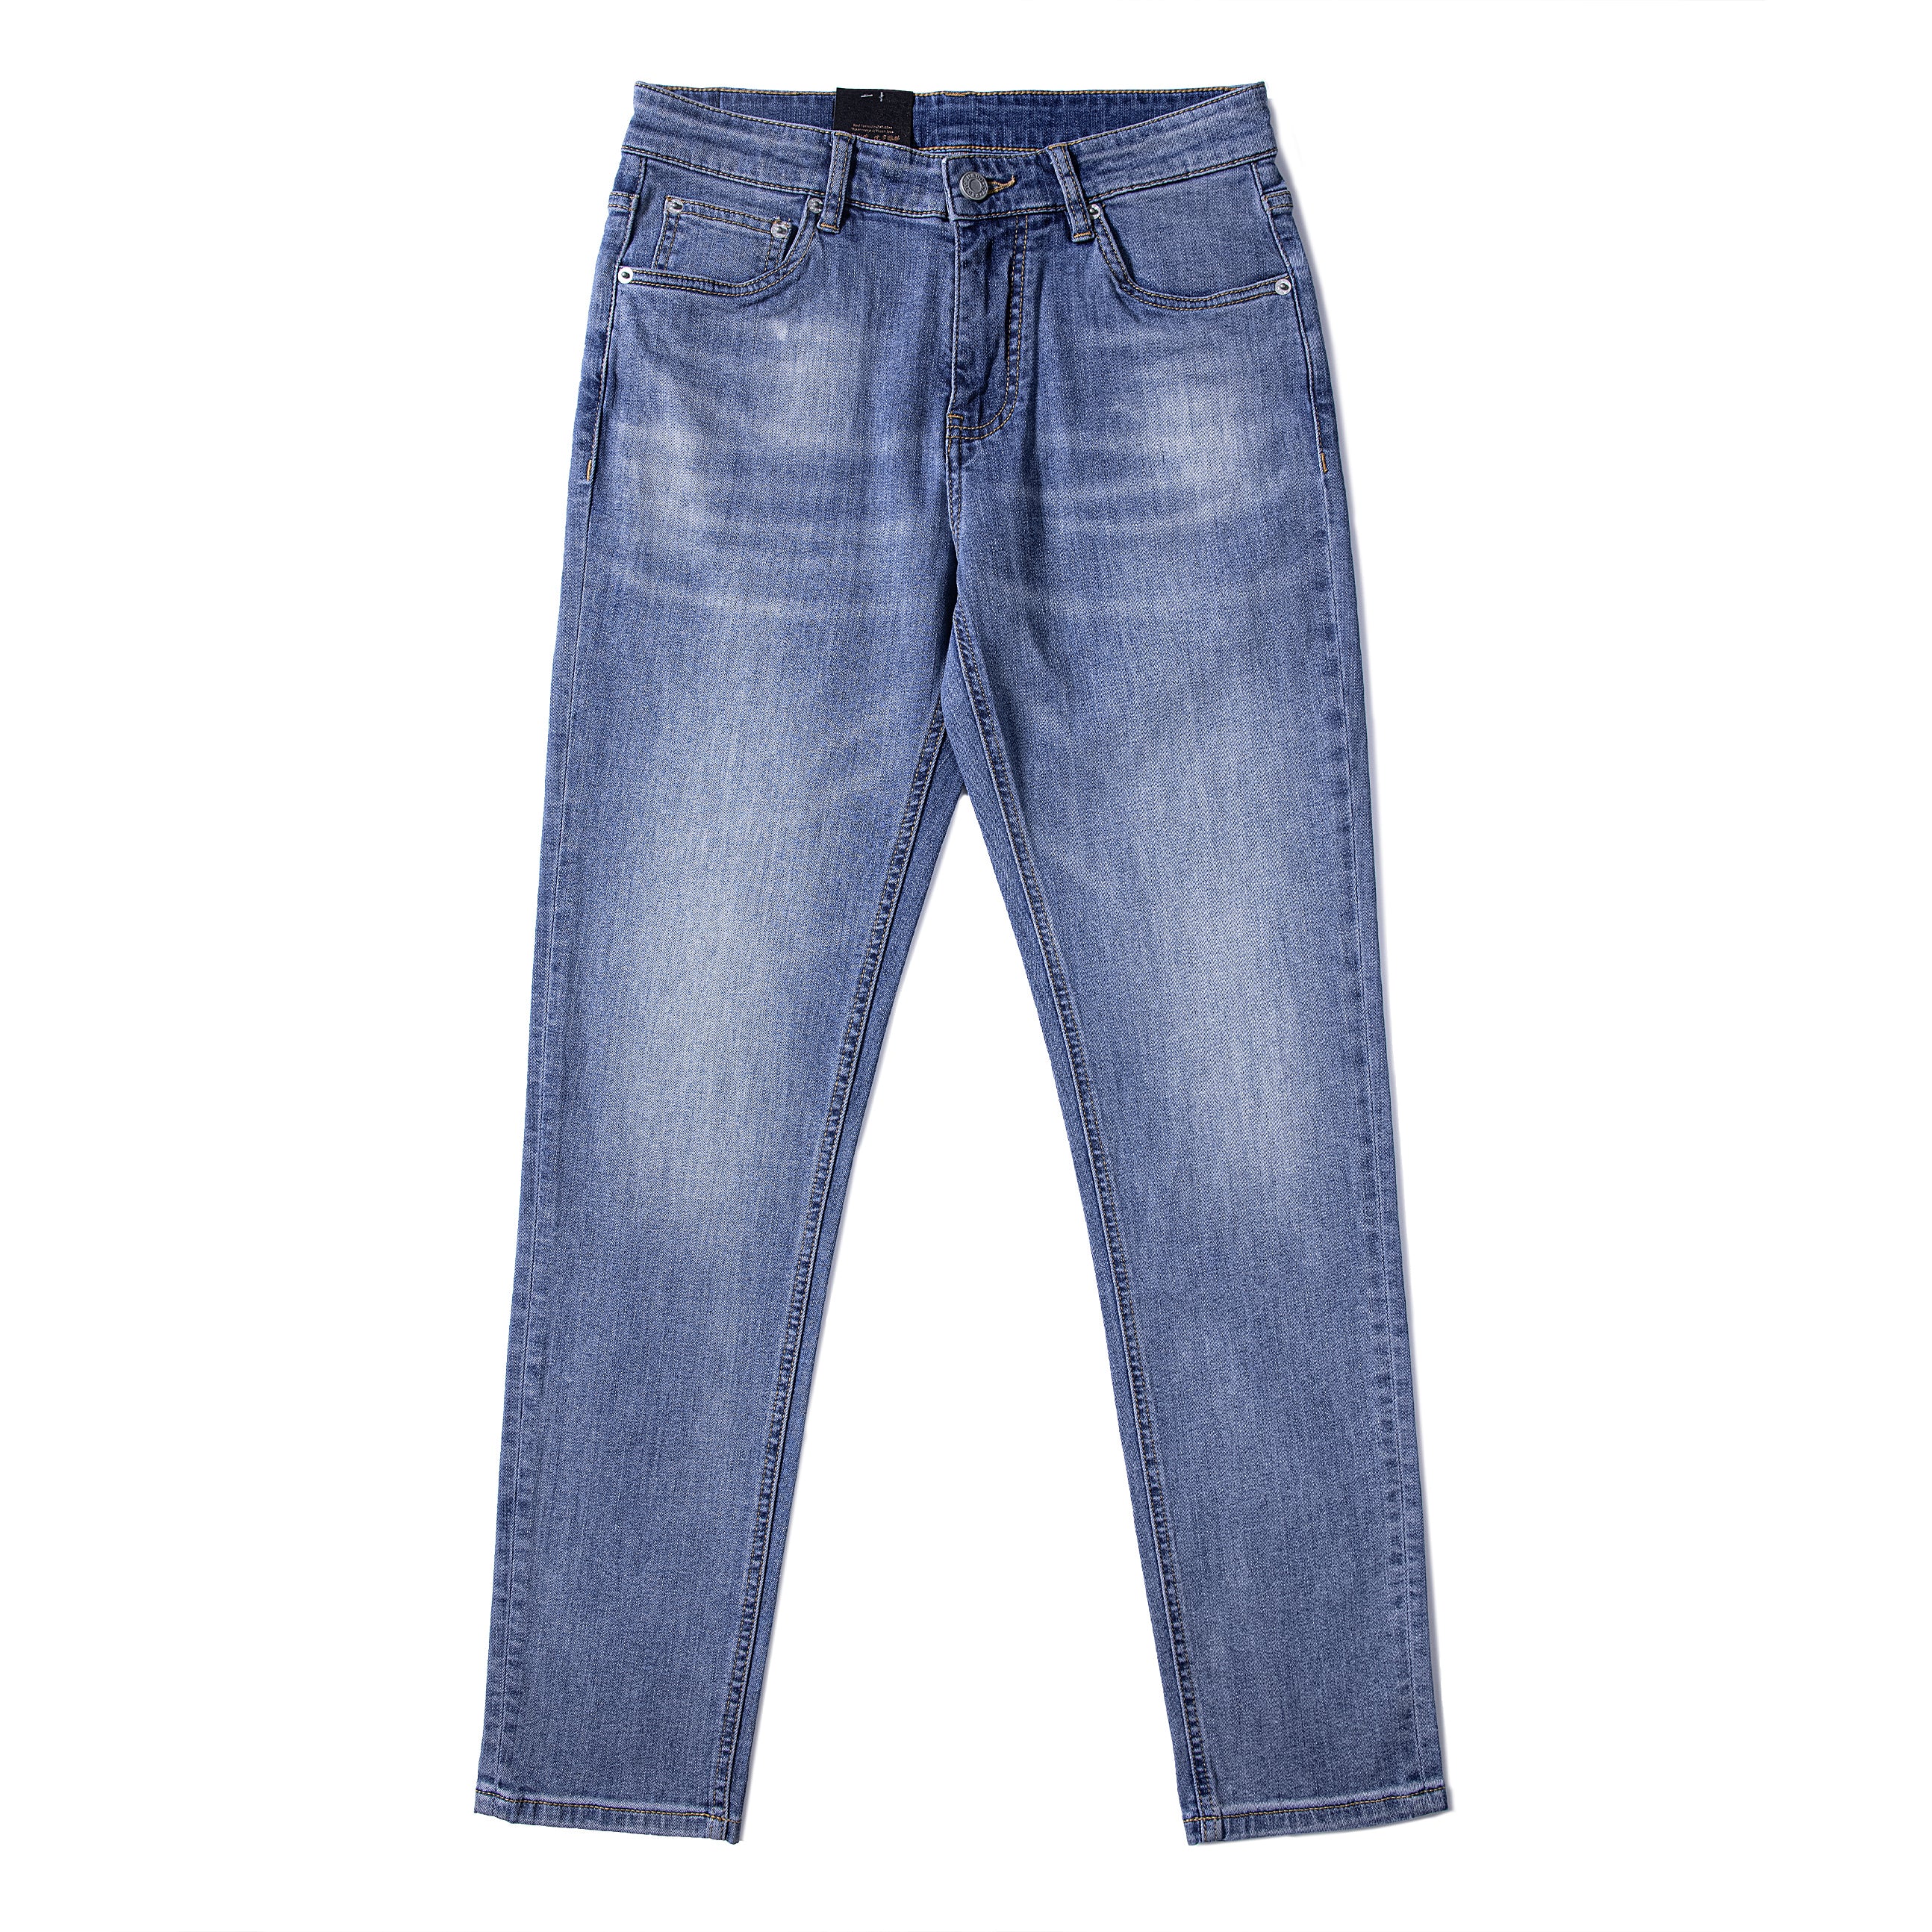 Light Blue Retro Skinny Jeans for Men - Trendy & Comfortable